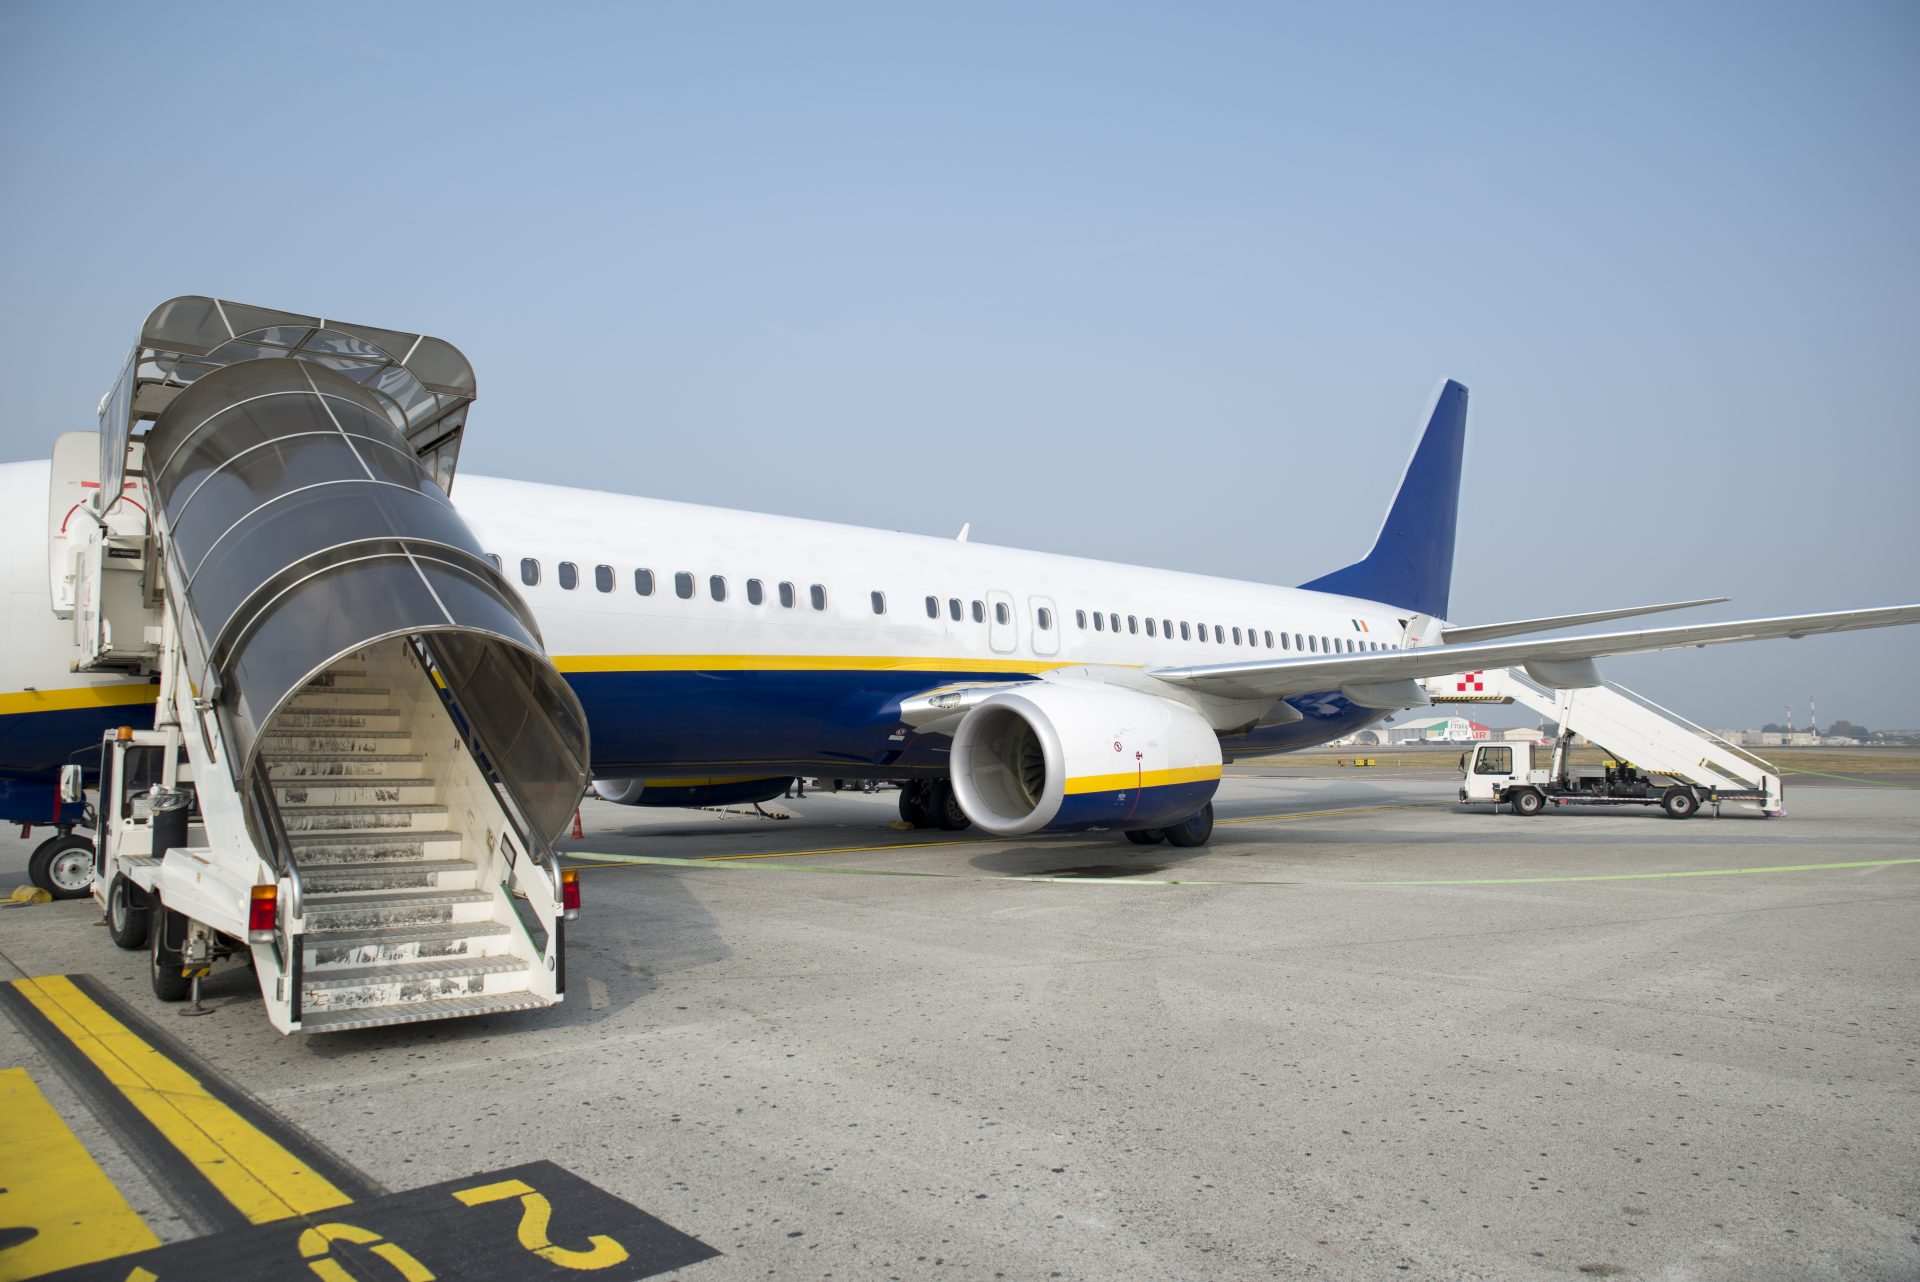 Durchsuchung von Ryanair-Maschine in Berlin beendet